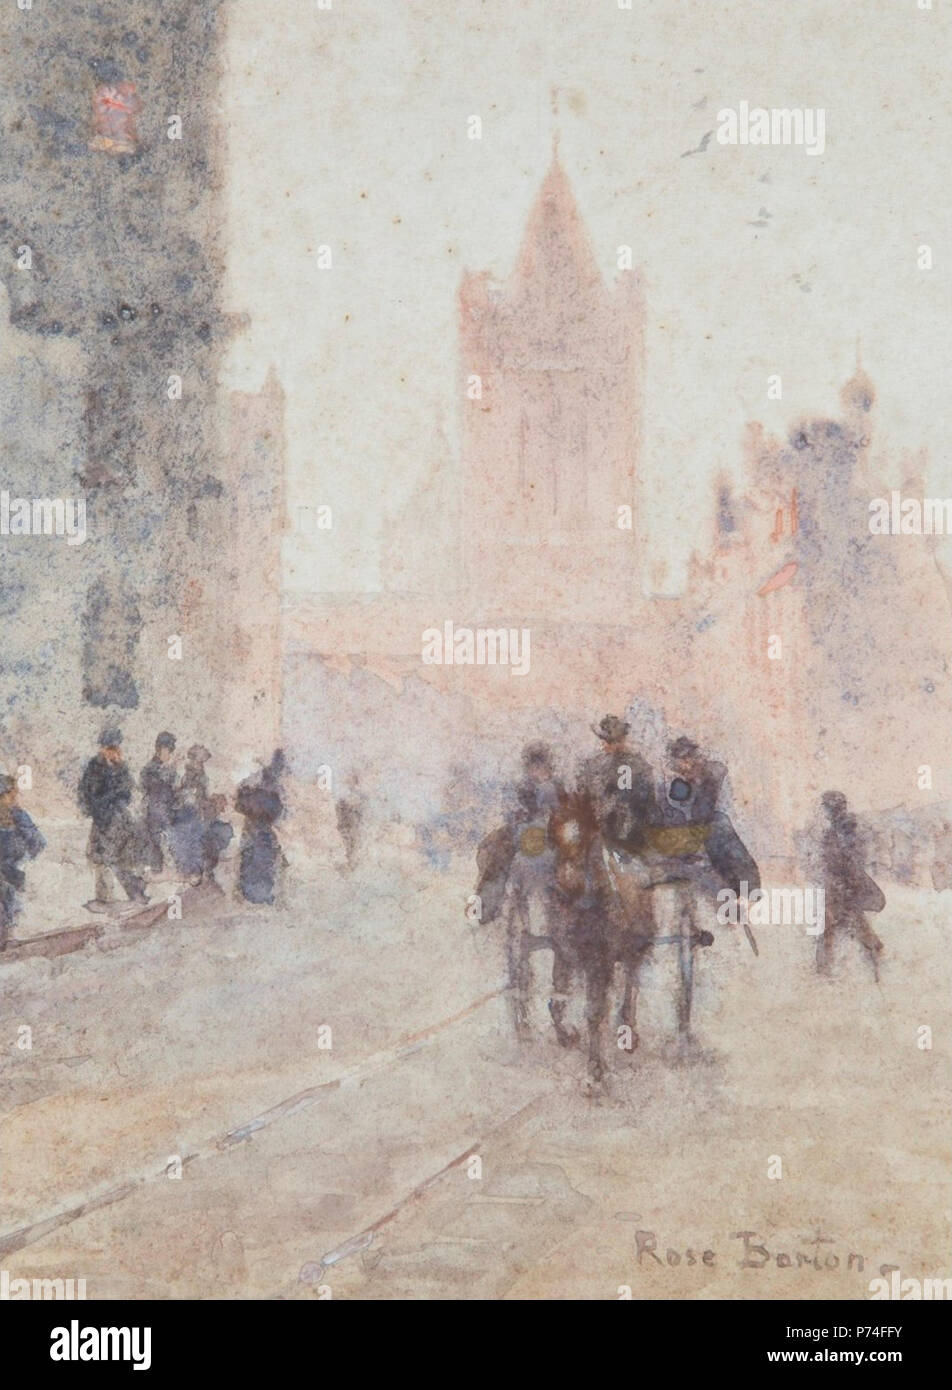 Anglais : Scène de rue par Rose Barton, aquarelle, 15 par 11 cm . 1 'Street' par Rose Barton, aquarelle, 15 par 11 cm Banque D'Images